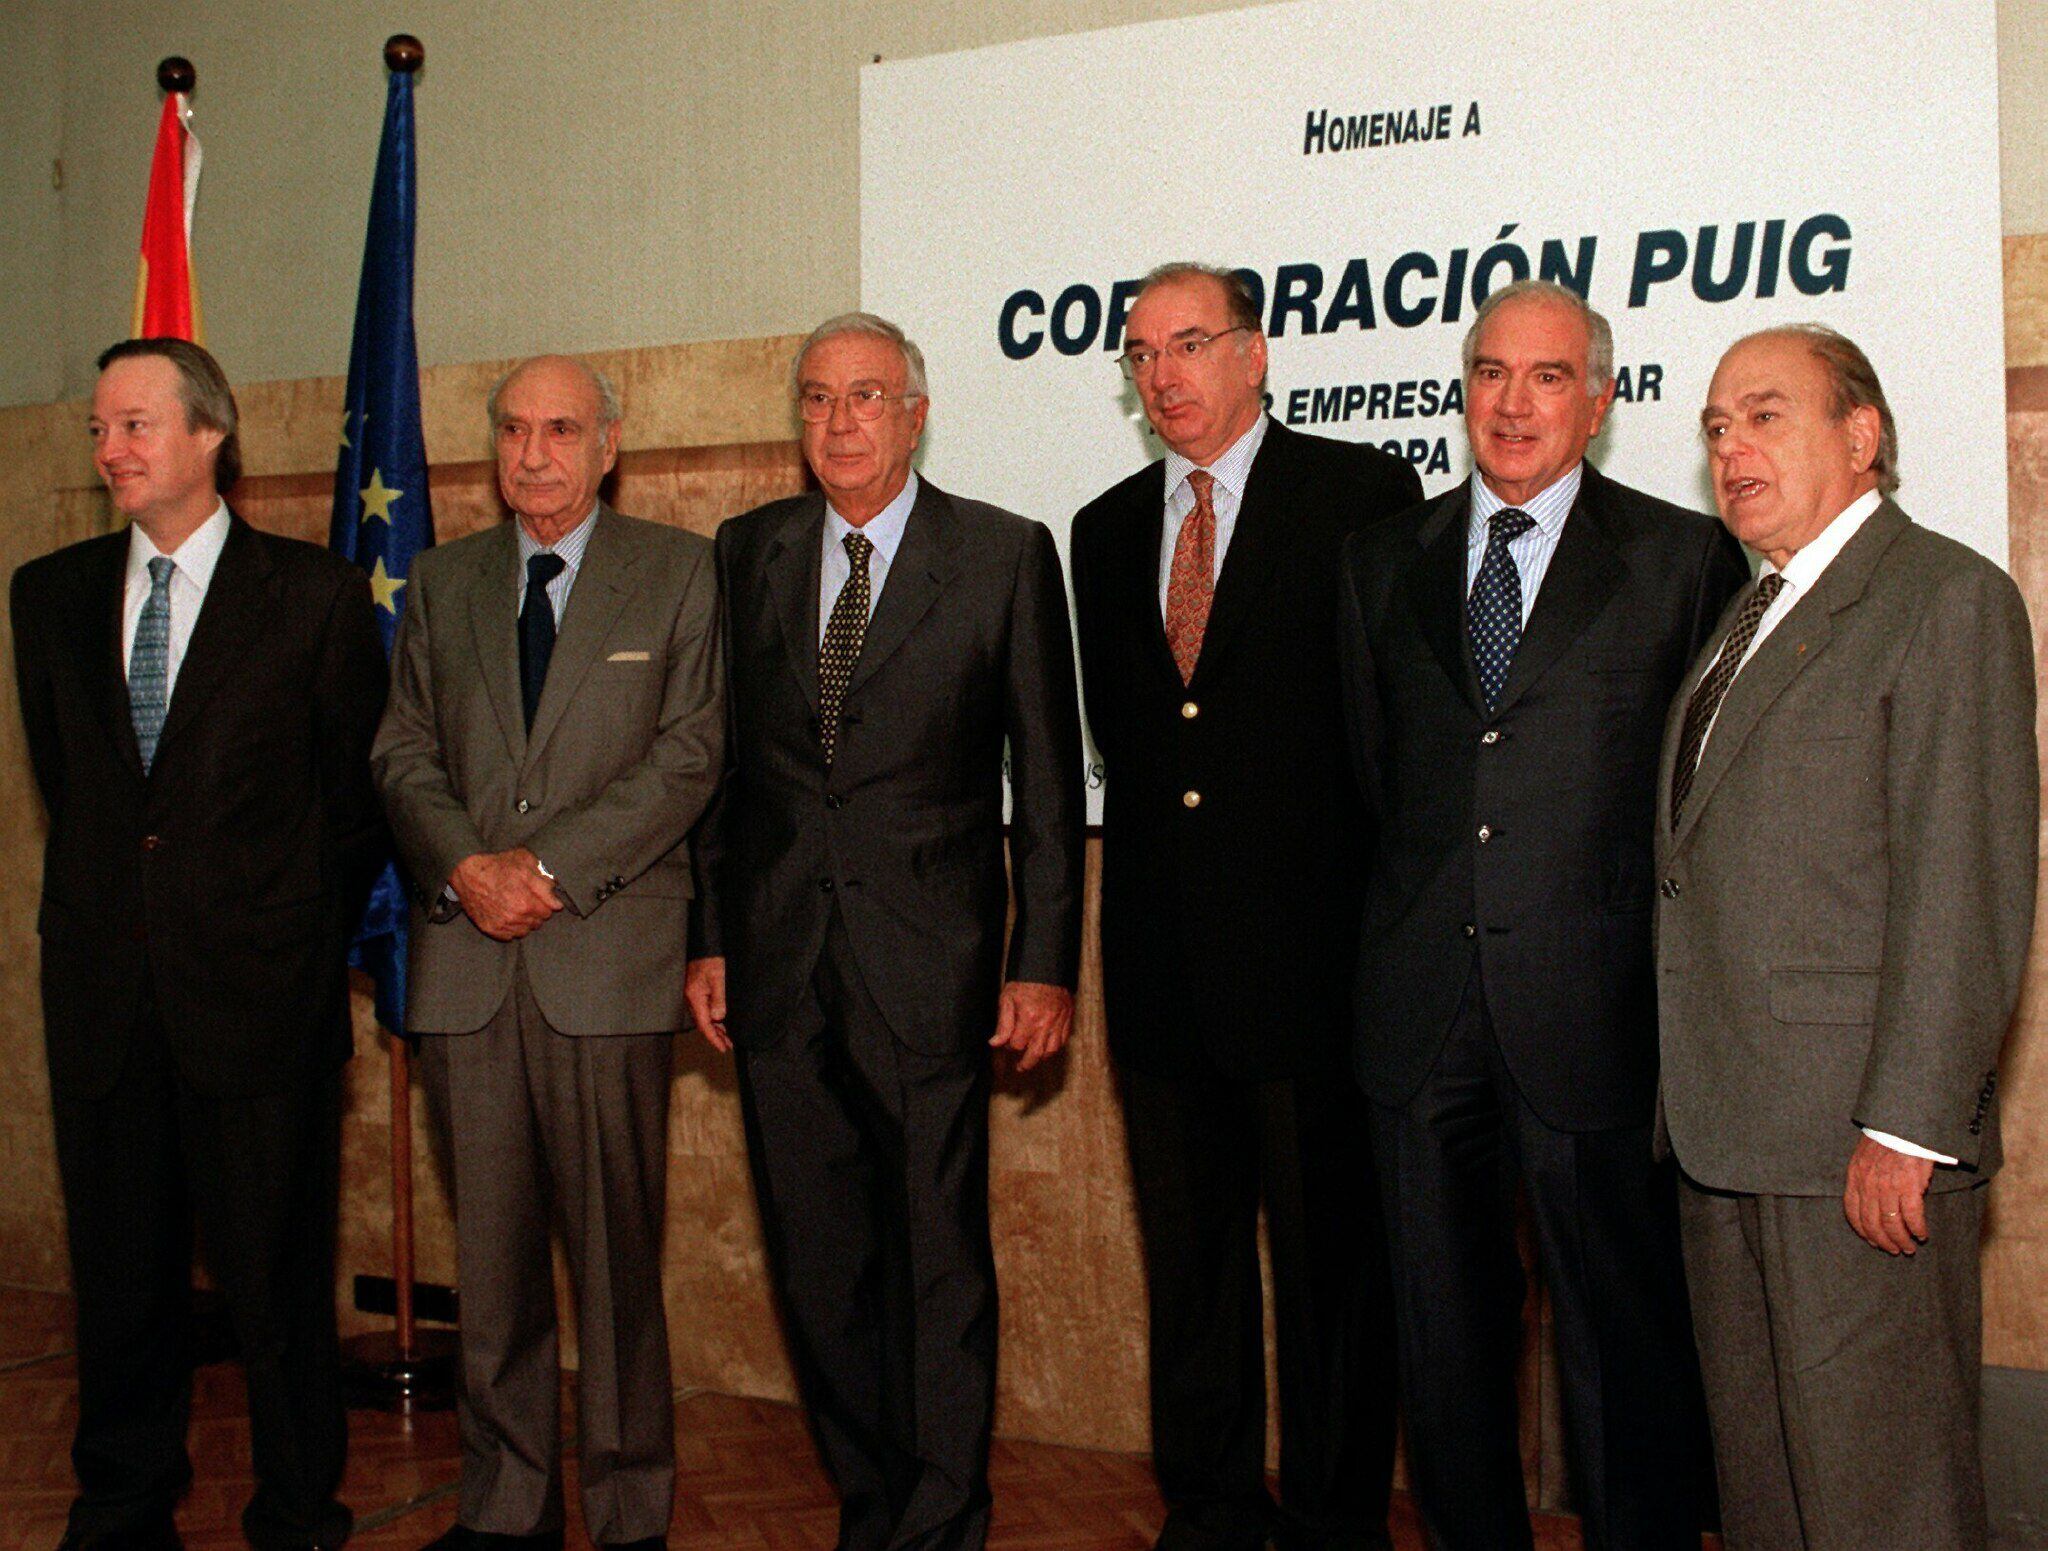 Los cuatro hermanos Puig Planas, Antonio, José María, Enrique y Mariano, segunda generación de la familia, en un homenaje recibido en  1998 junto al entonces ministro de Industria, Josep Piqué, y el expresidente de la Generalitat, Jordi Pujol.